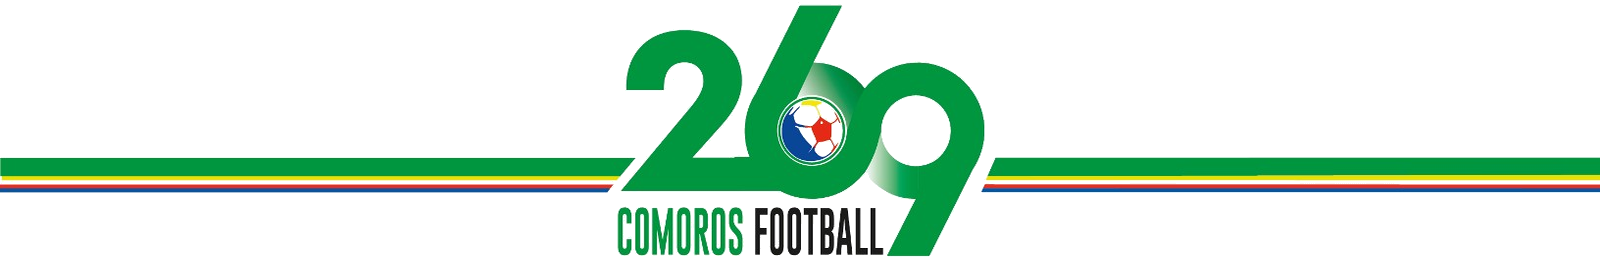 Comoros Football 269 | Portail du football des Comores